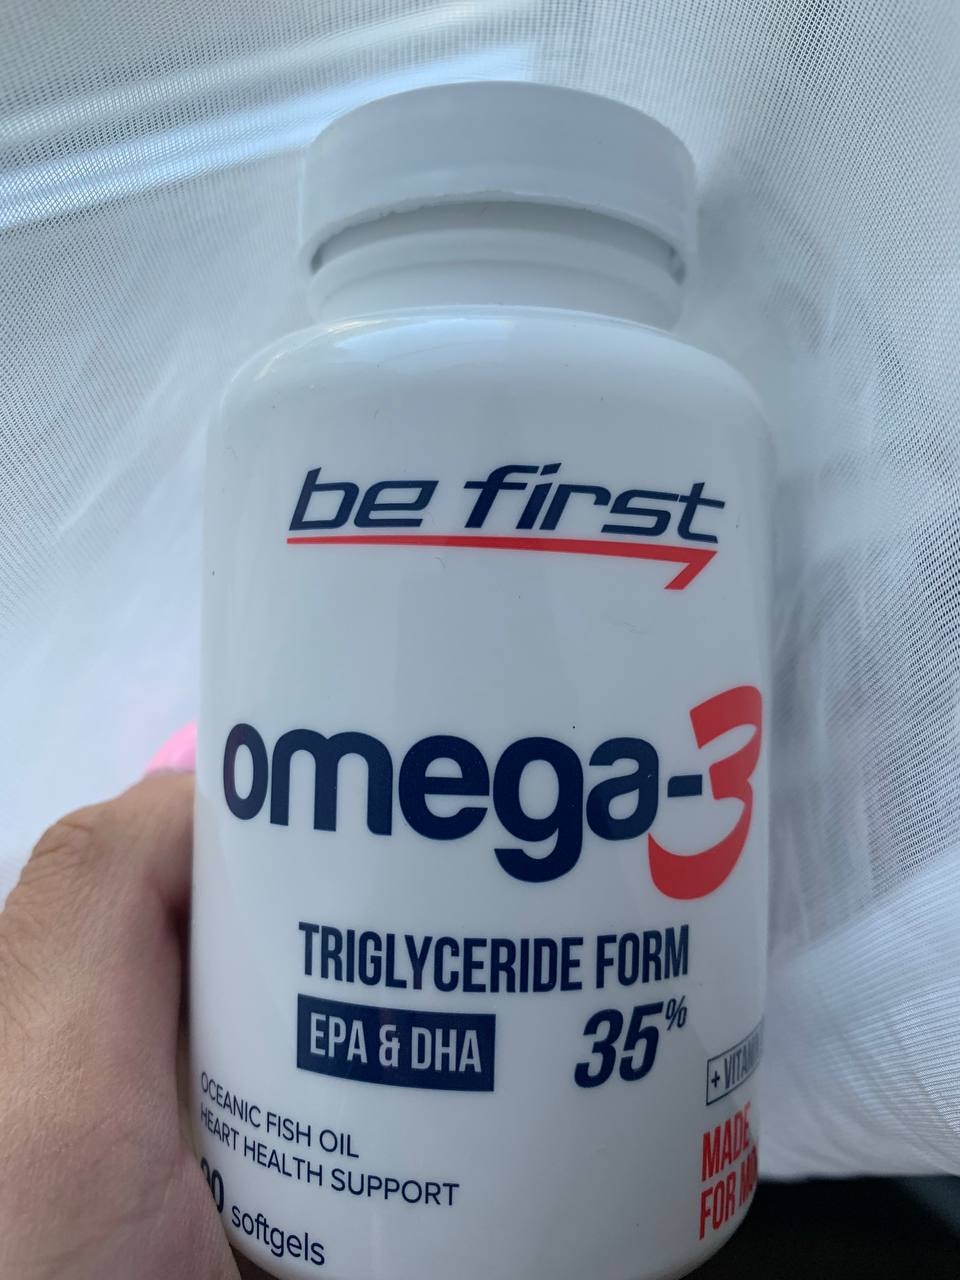 Be first omega 3 - Омега - это источник незаменимых жирных кислот